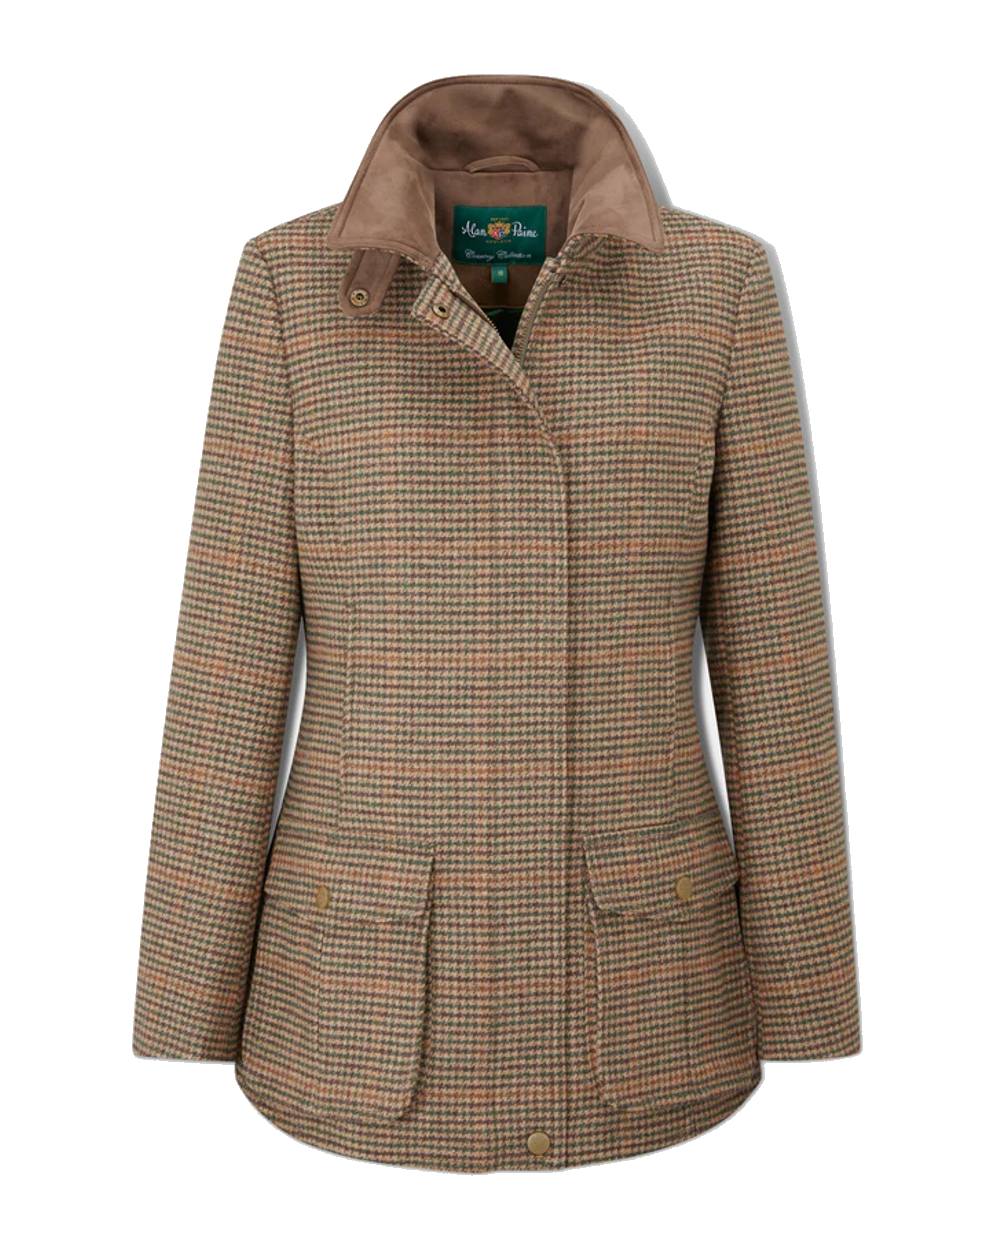 Alan Paine Surrey Tweed Coat in Sycamore 